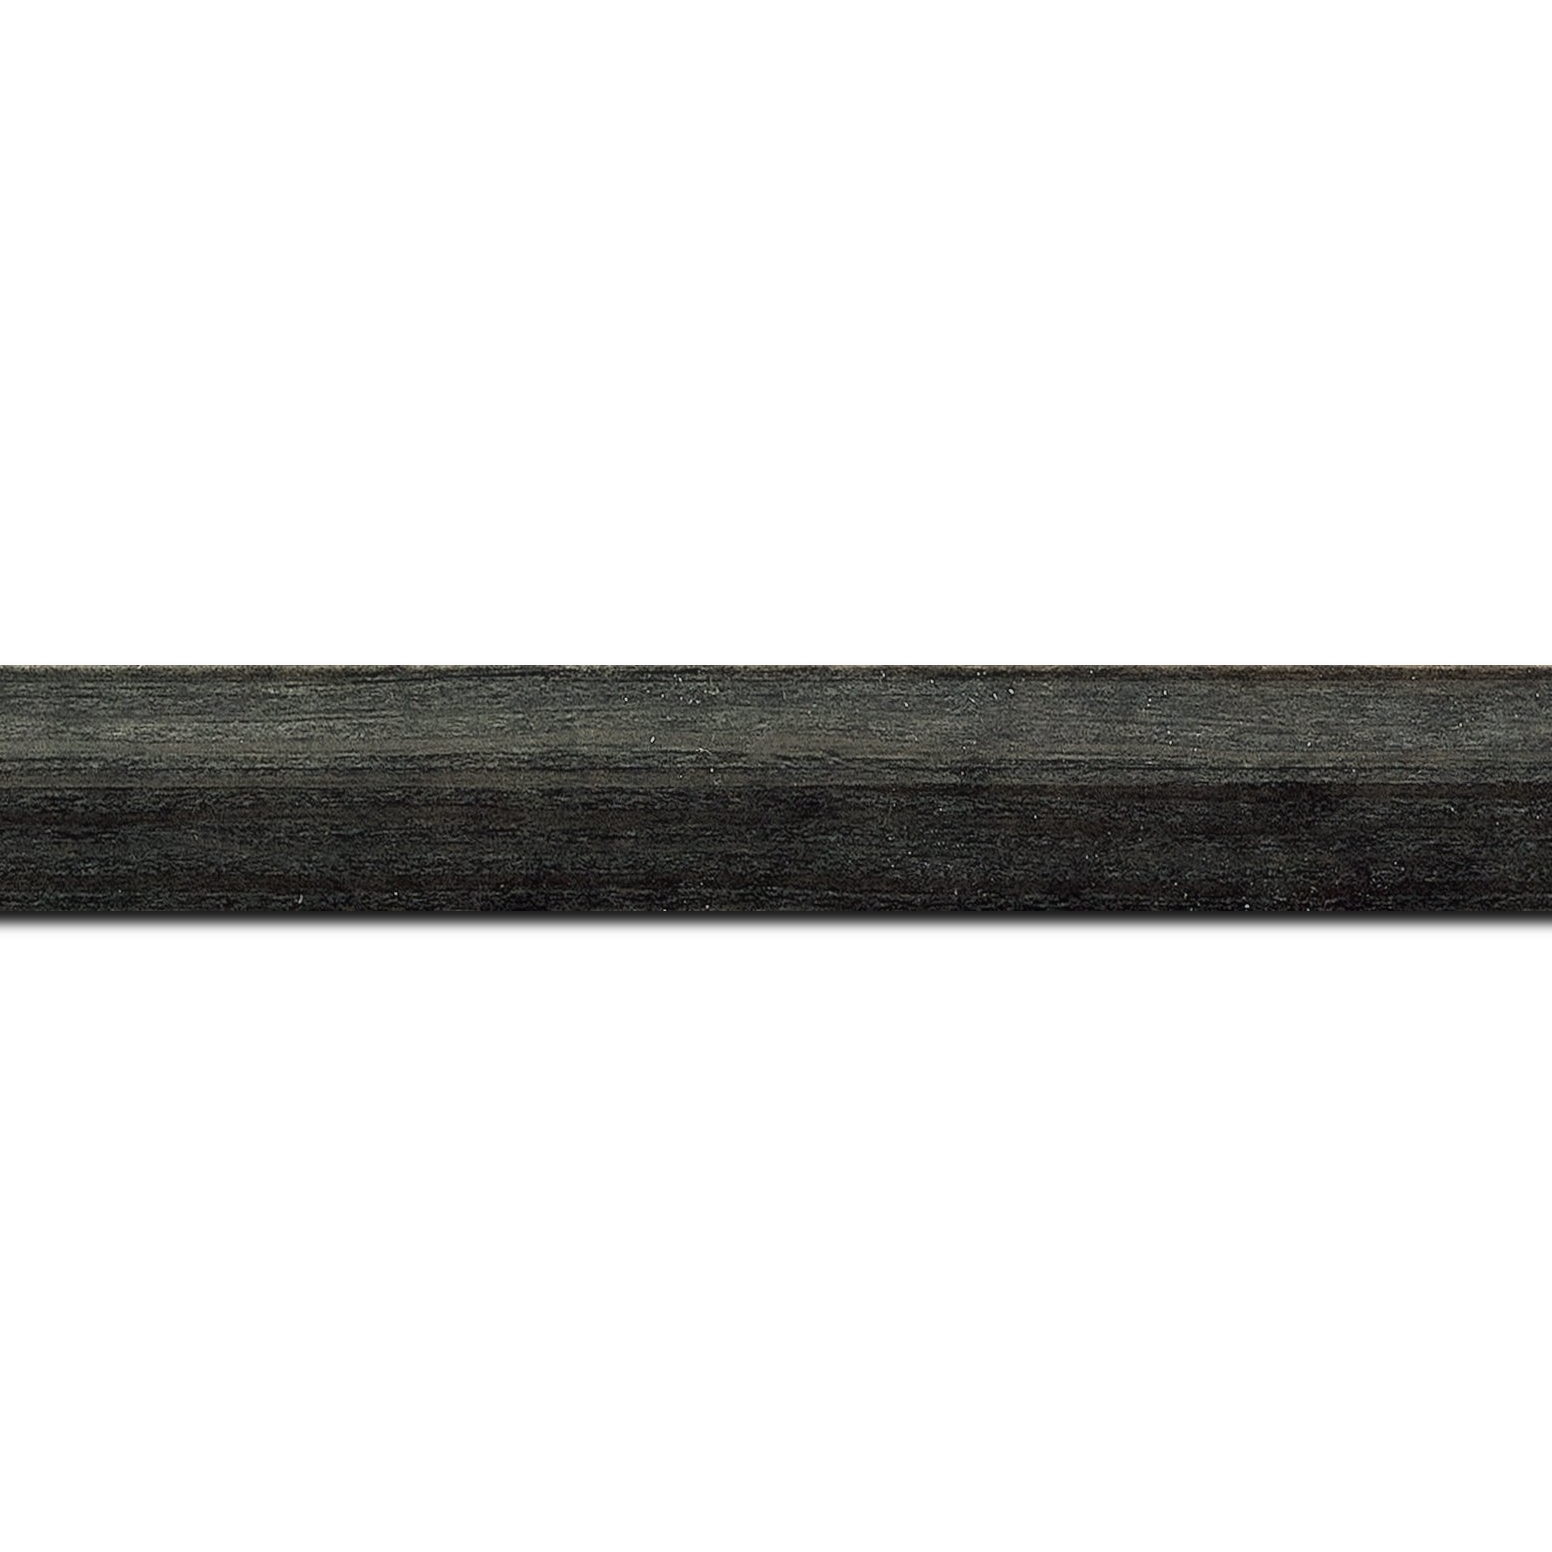 Baguette longueur 1.40m bois profil arrondi en pente plongeant largeur 2.4cm couleur  gris foncé anthracite finition vernis brillant,veine du bois  apparent (pin) ,